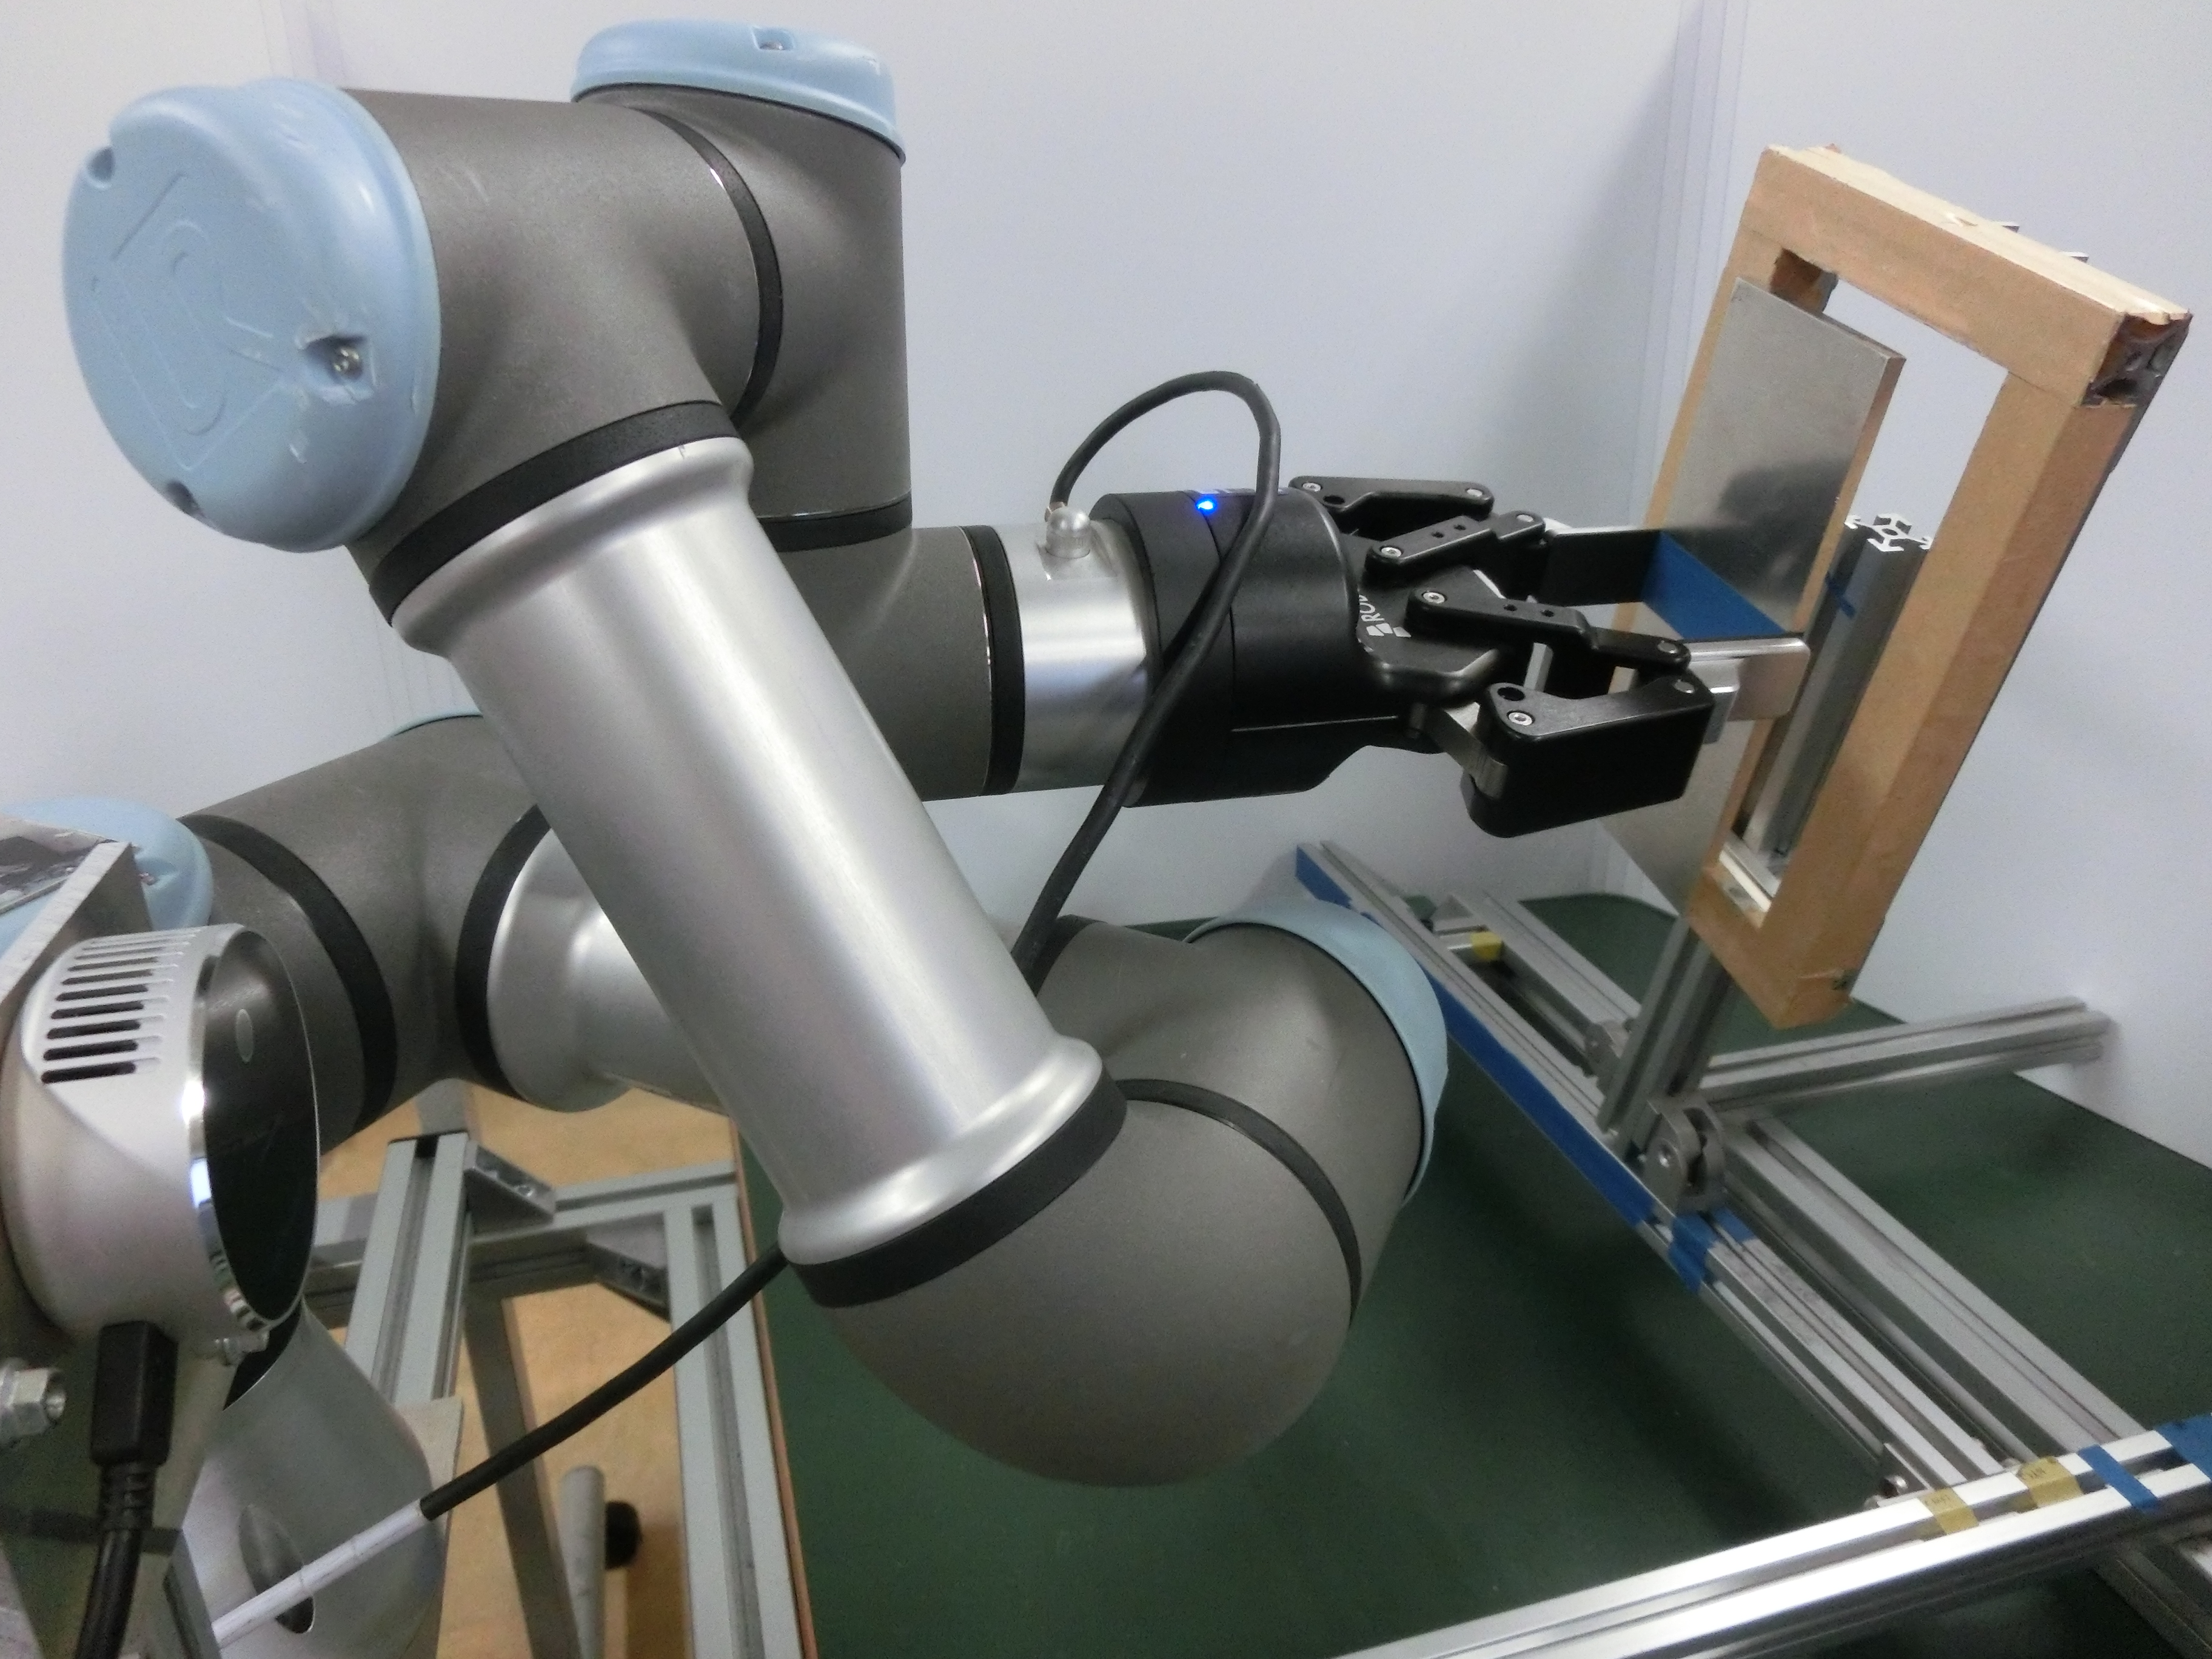 ロボットアームで枠に板状物体を差し込む様子。窓枠のように斜めから滑り込ませるような動きを自動的に生成する。